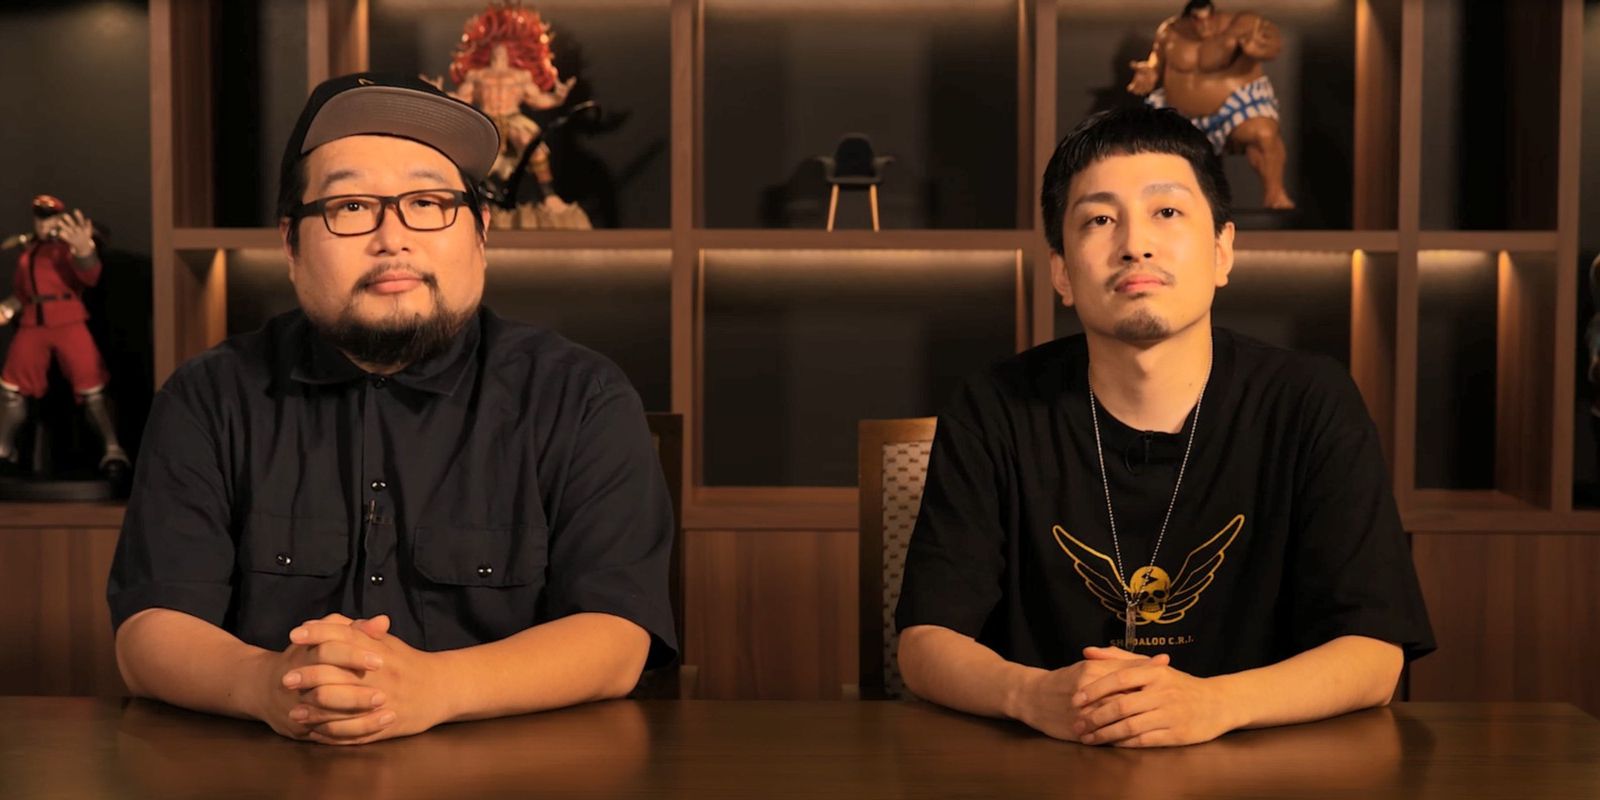 Takayuki Nakayama (left) and Shuhei Matsumoto (right) discuss upcoming additions to Street Fighter V